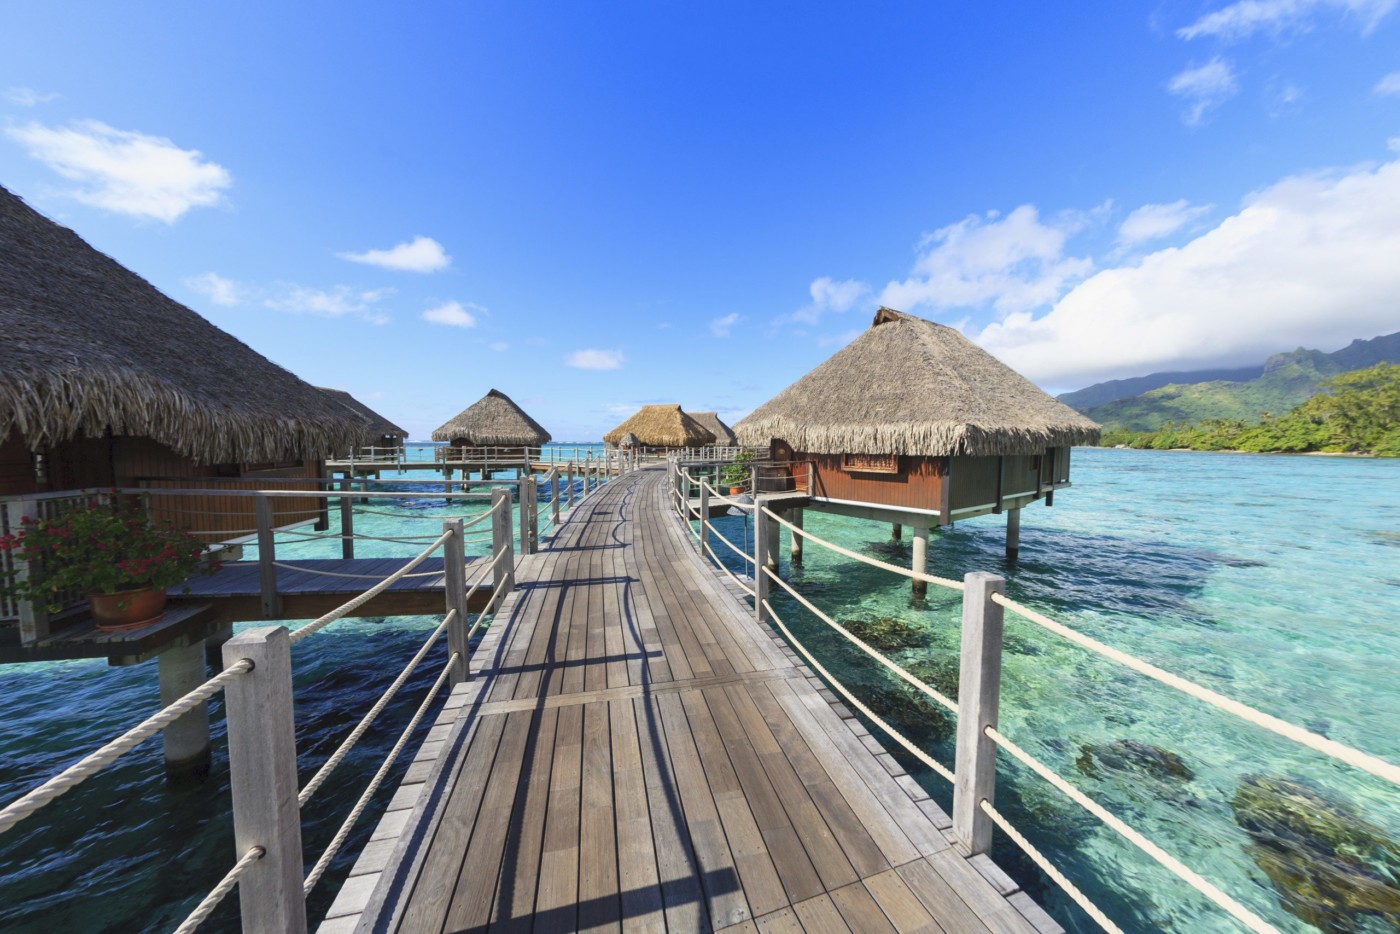 Decks connecting bungalows over tropical ocean, Bora Bora, French Polynesia